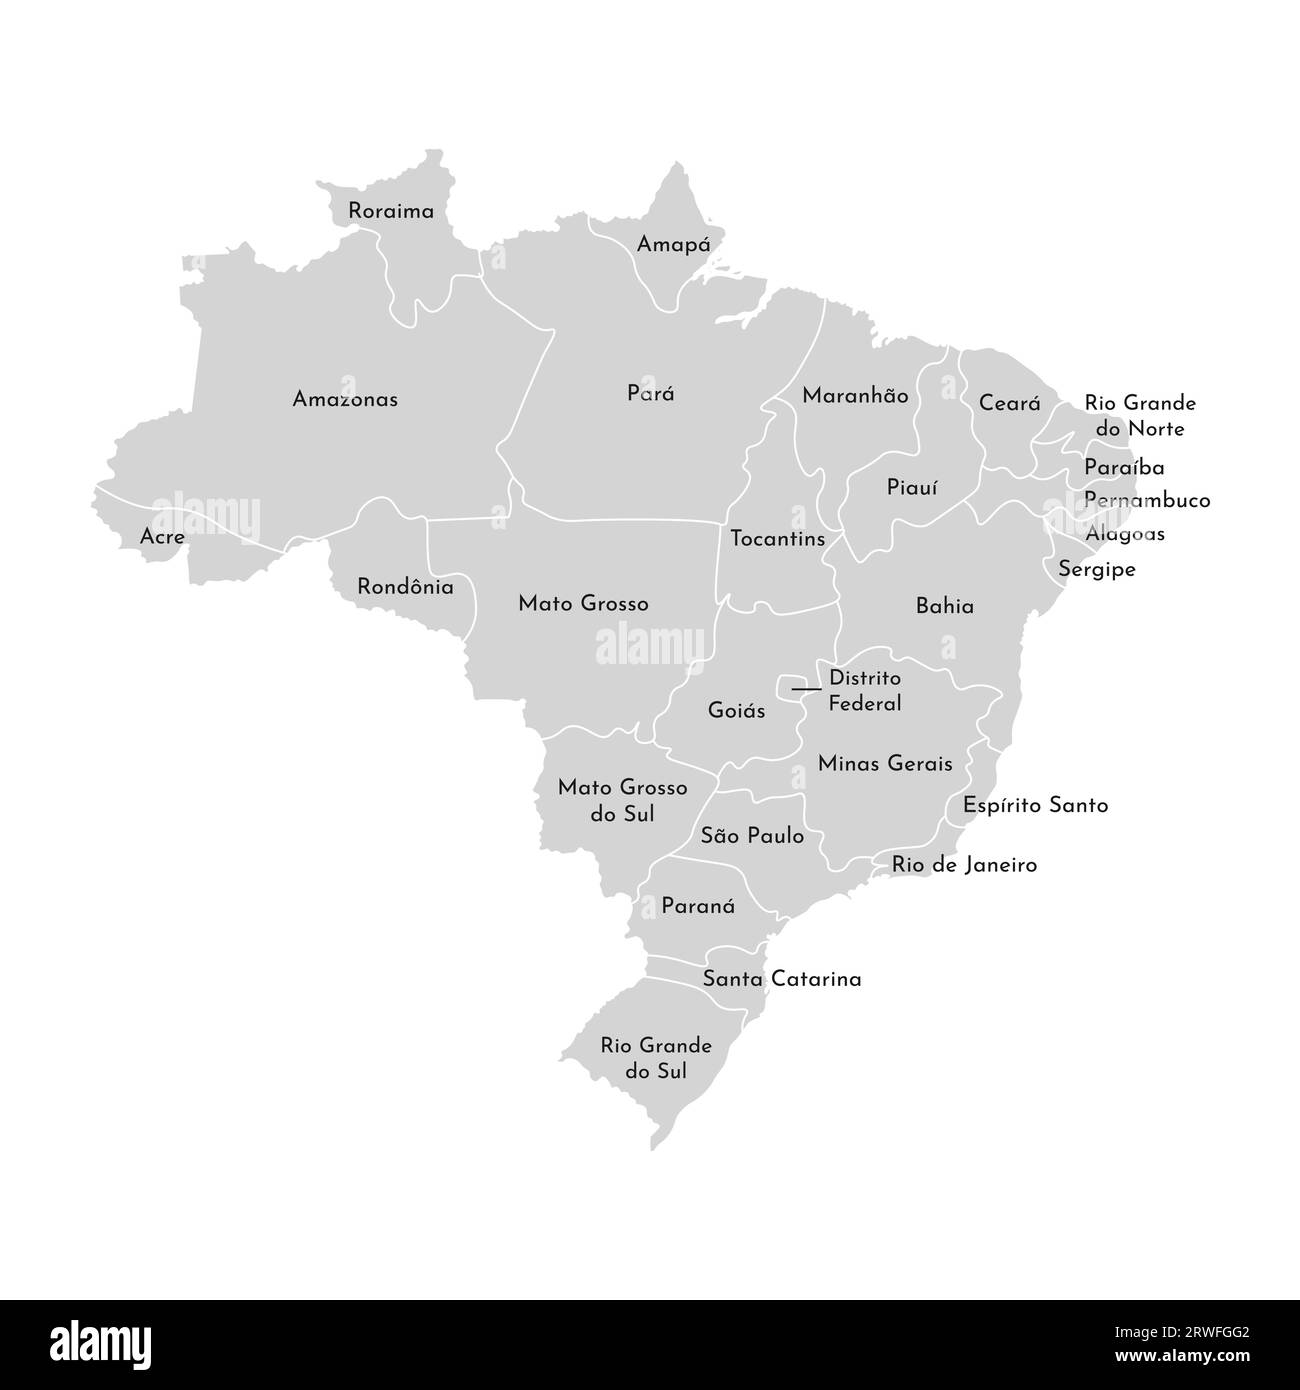 Illustrazione vettoriale isolata della mappa amministrativa semplificata del Brasile. Confini e nomi delle province (regioni). Silhouette grigie. Contorno bianco Illustrazione Vettoriale